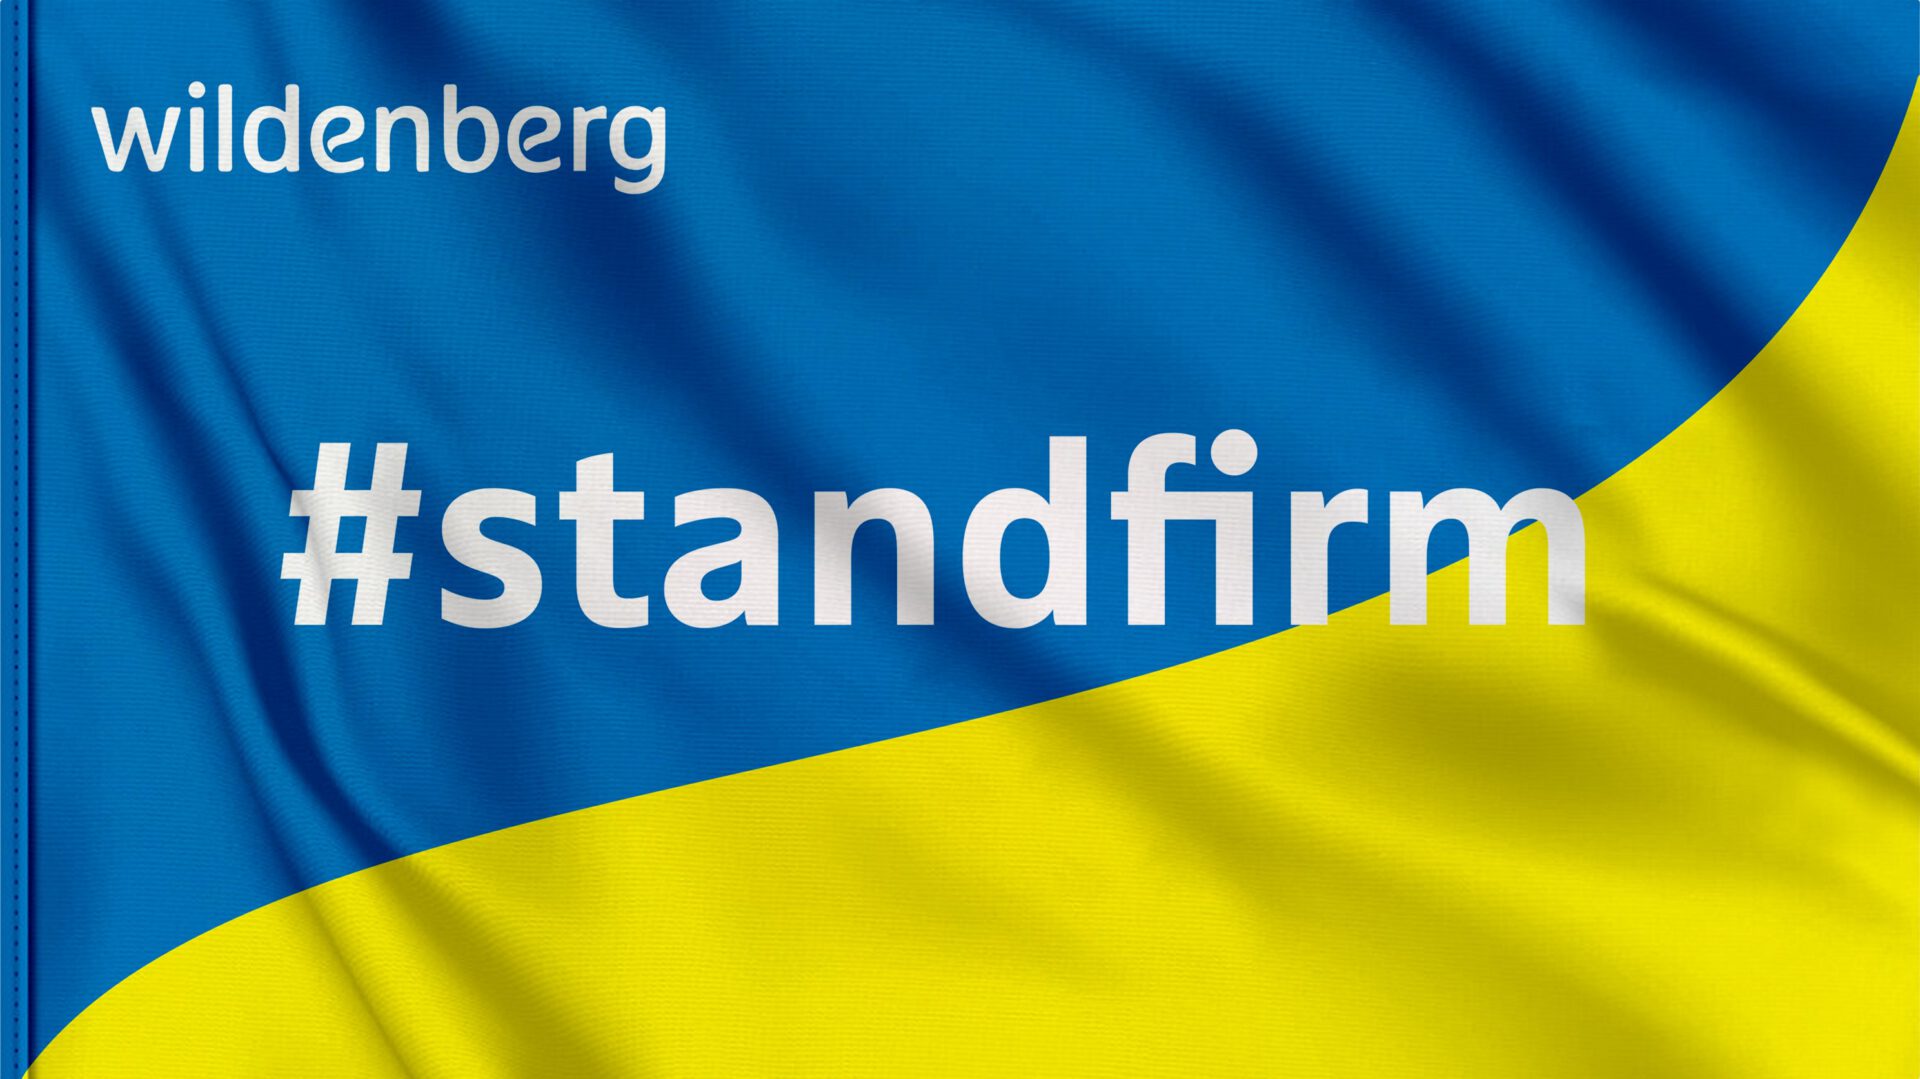 Wildenberg Advocaten staat pal achter de #standfirm verklaring